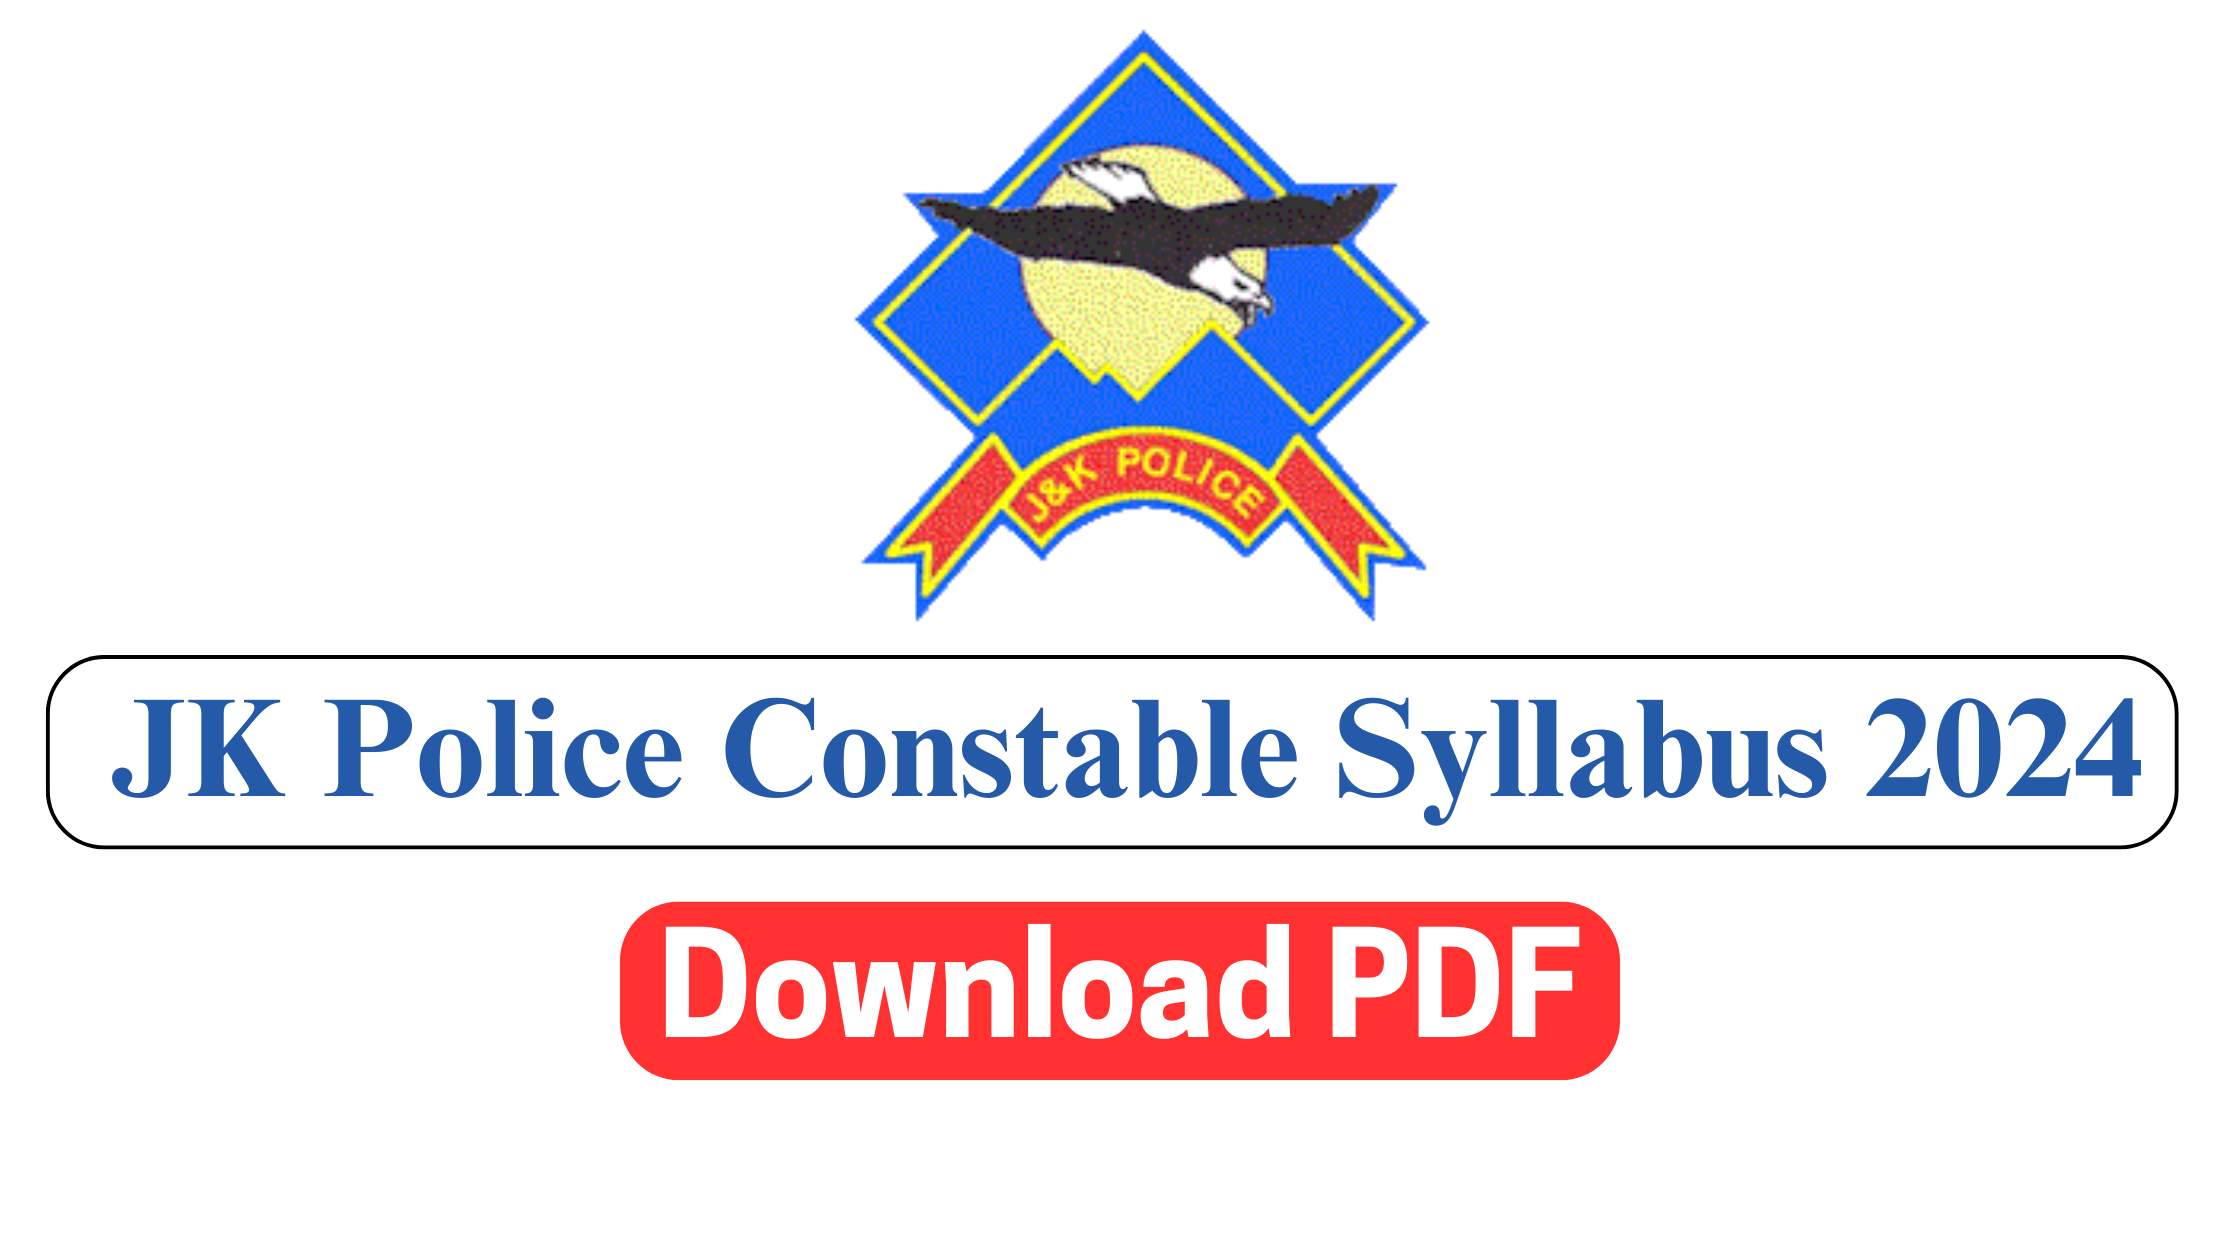 JK Police Constable Syllabus 2024